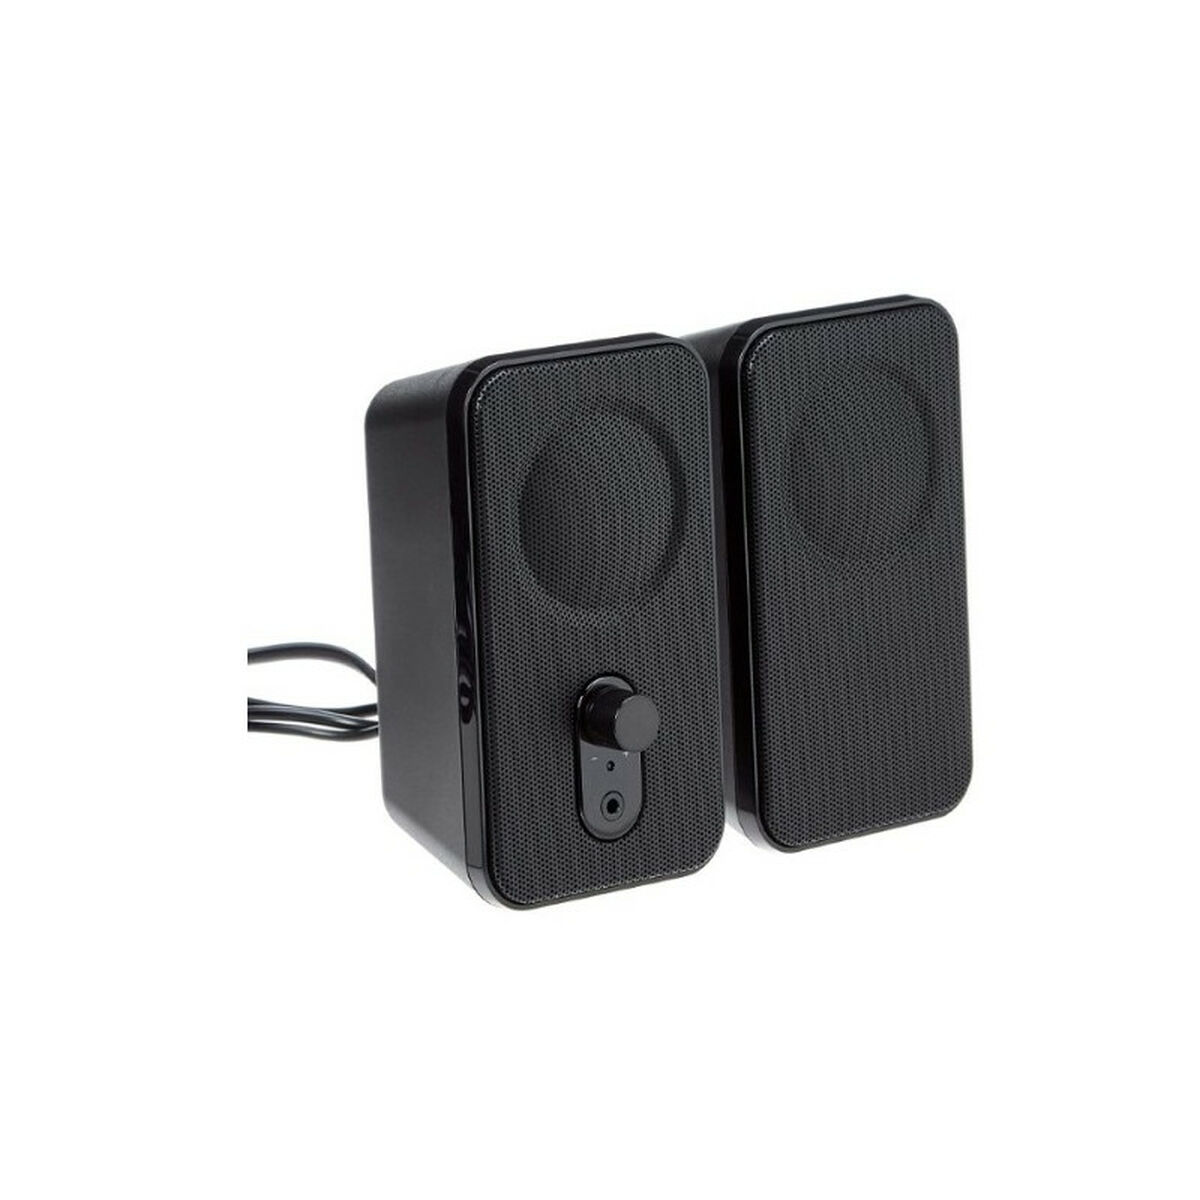 PC Speakers Amazon Basics V216UK Black (Refurbished C)